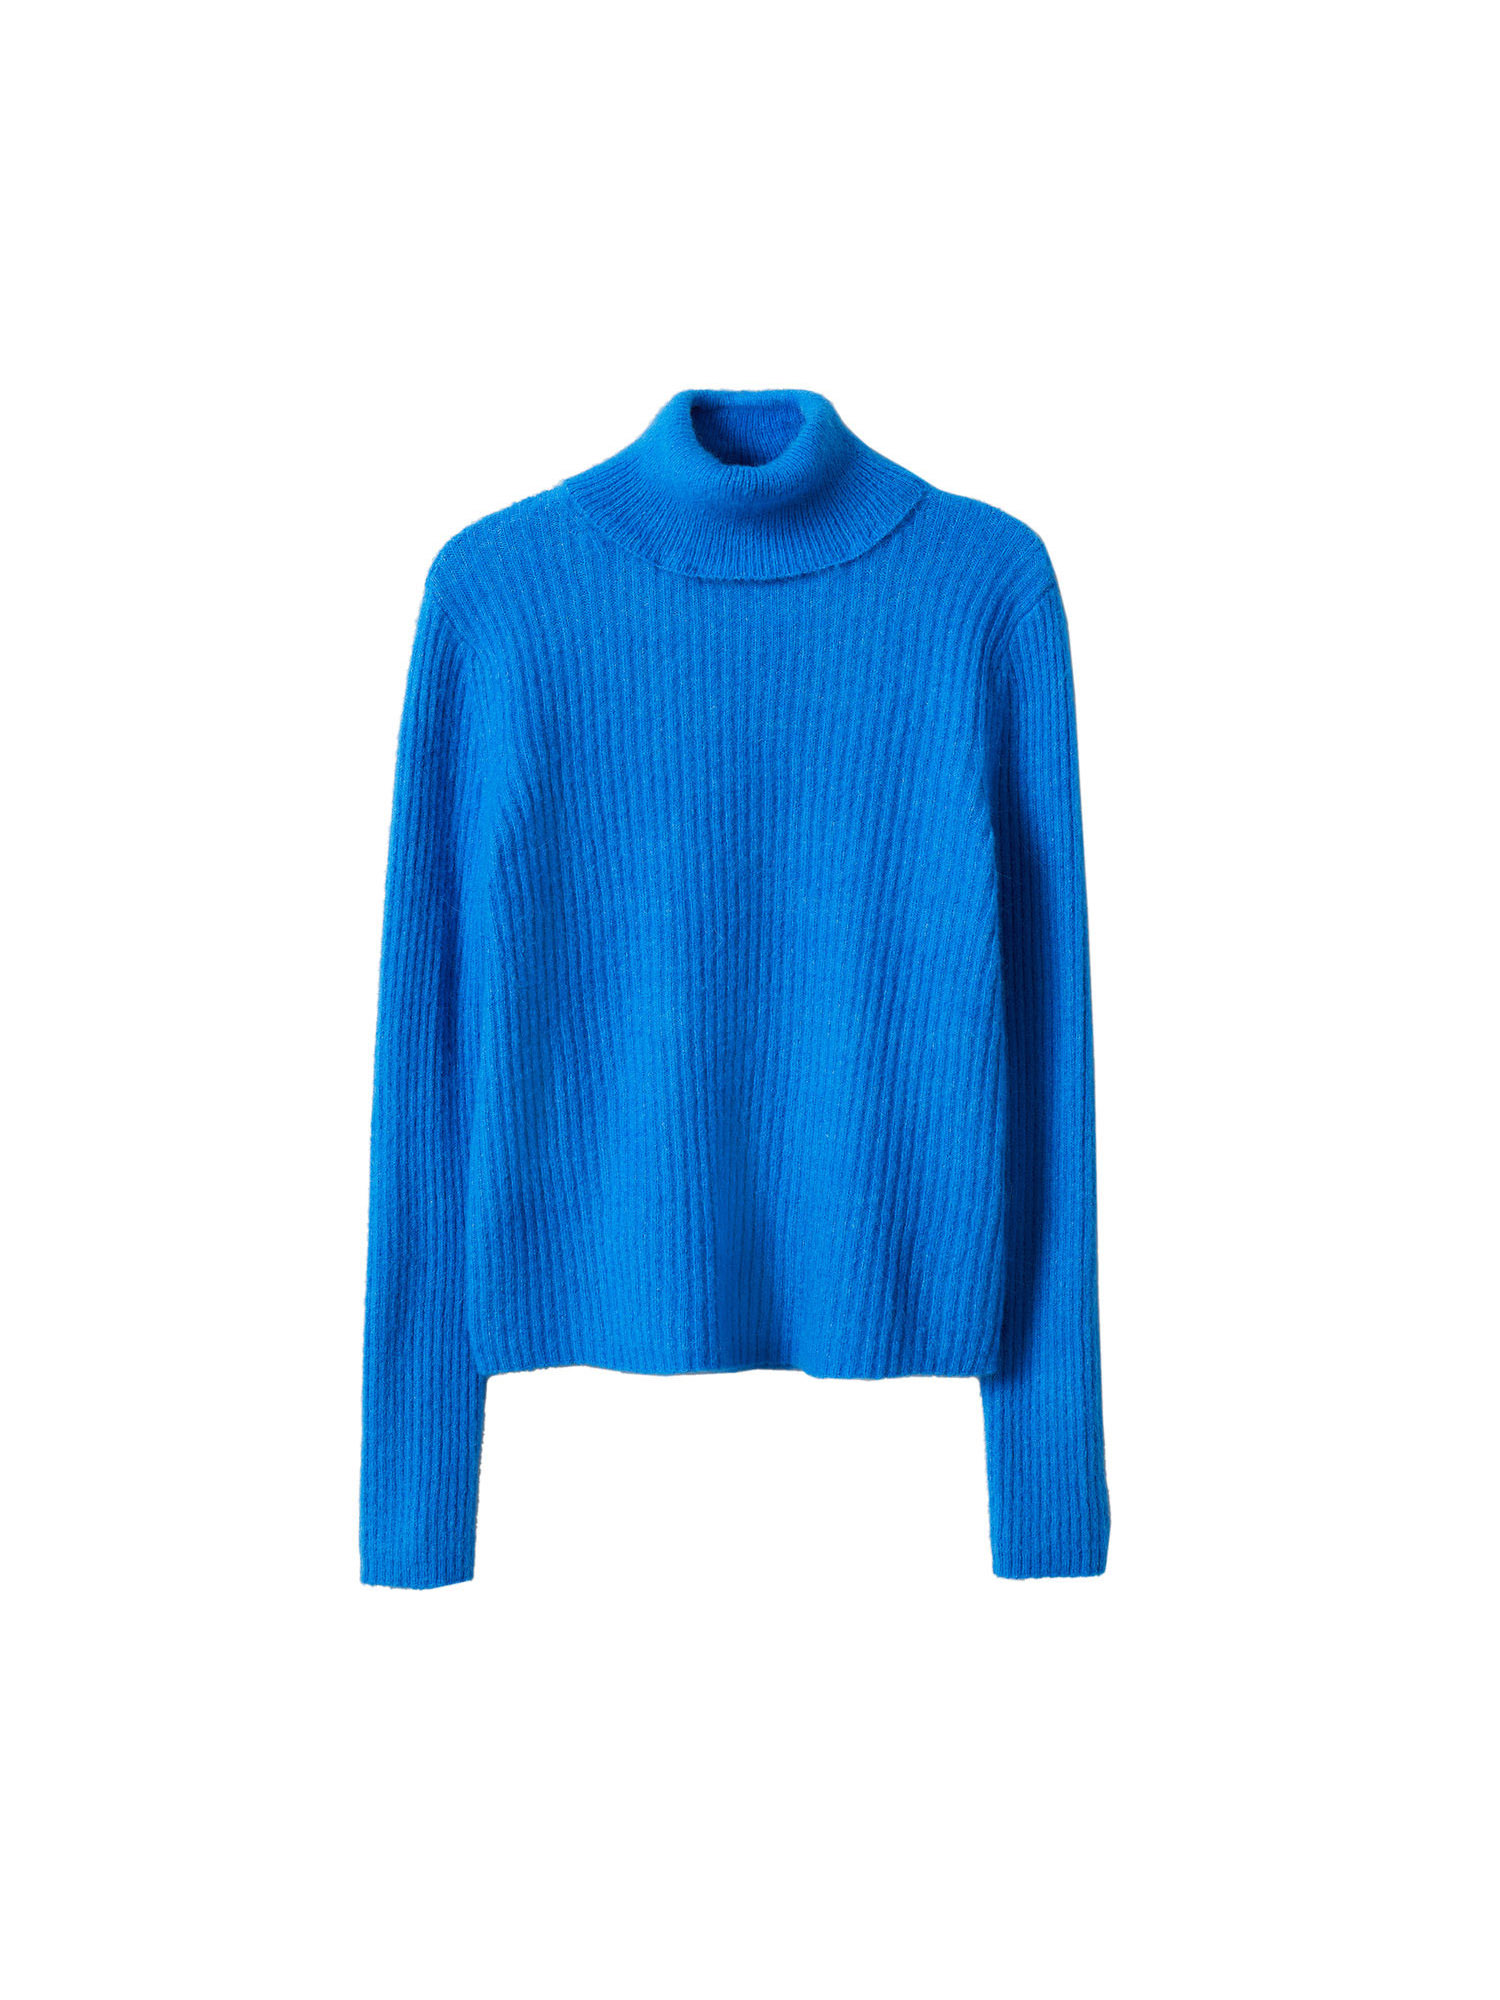 TEqcn Swetry MANGO Sweter Canoli w kolorze Królewski Błękitm 